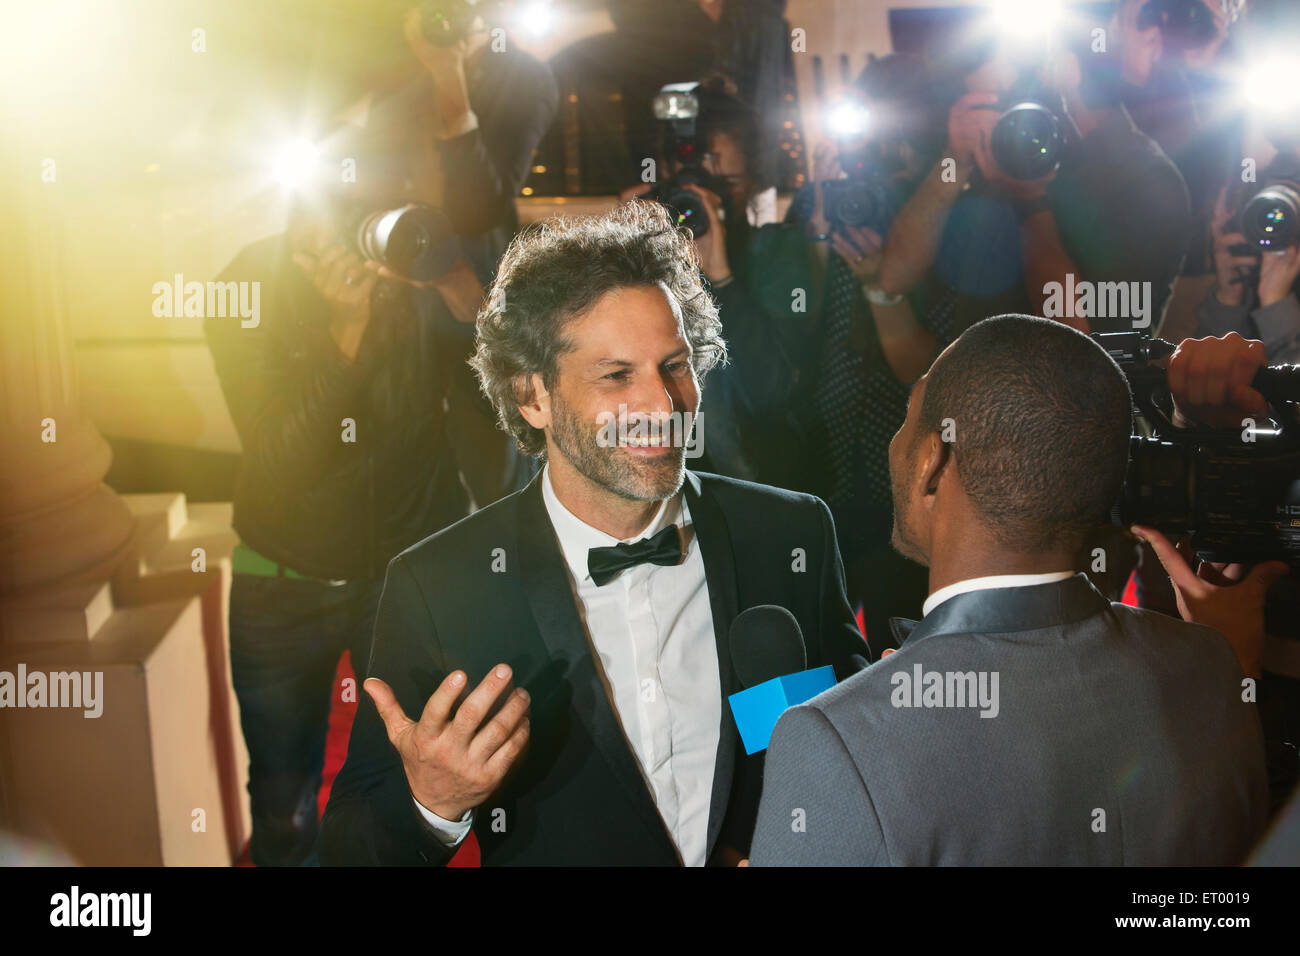 Prominenten interviewt und fotografiert von Paparazzi-Fotografen bei Veranstaltung Stockfoto